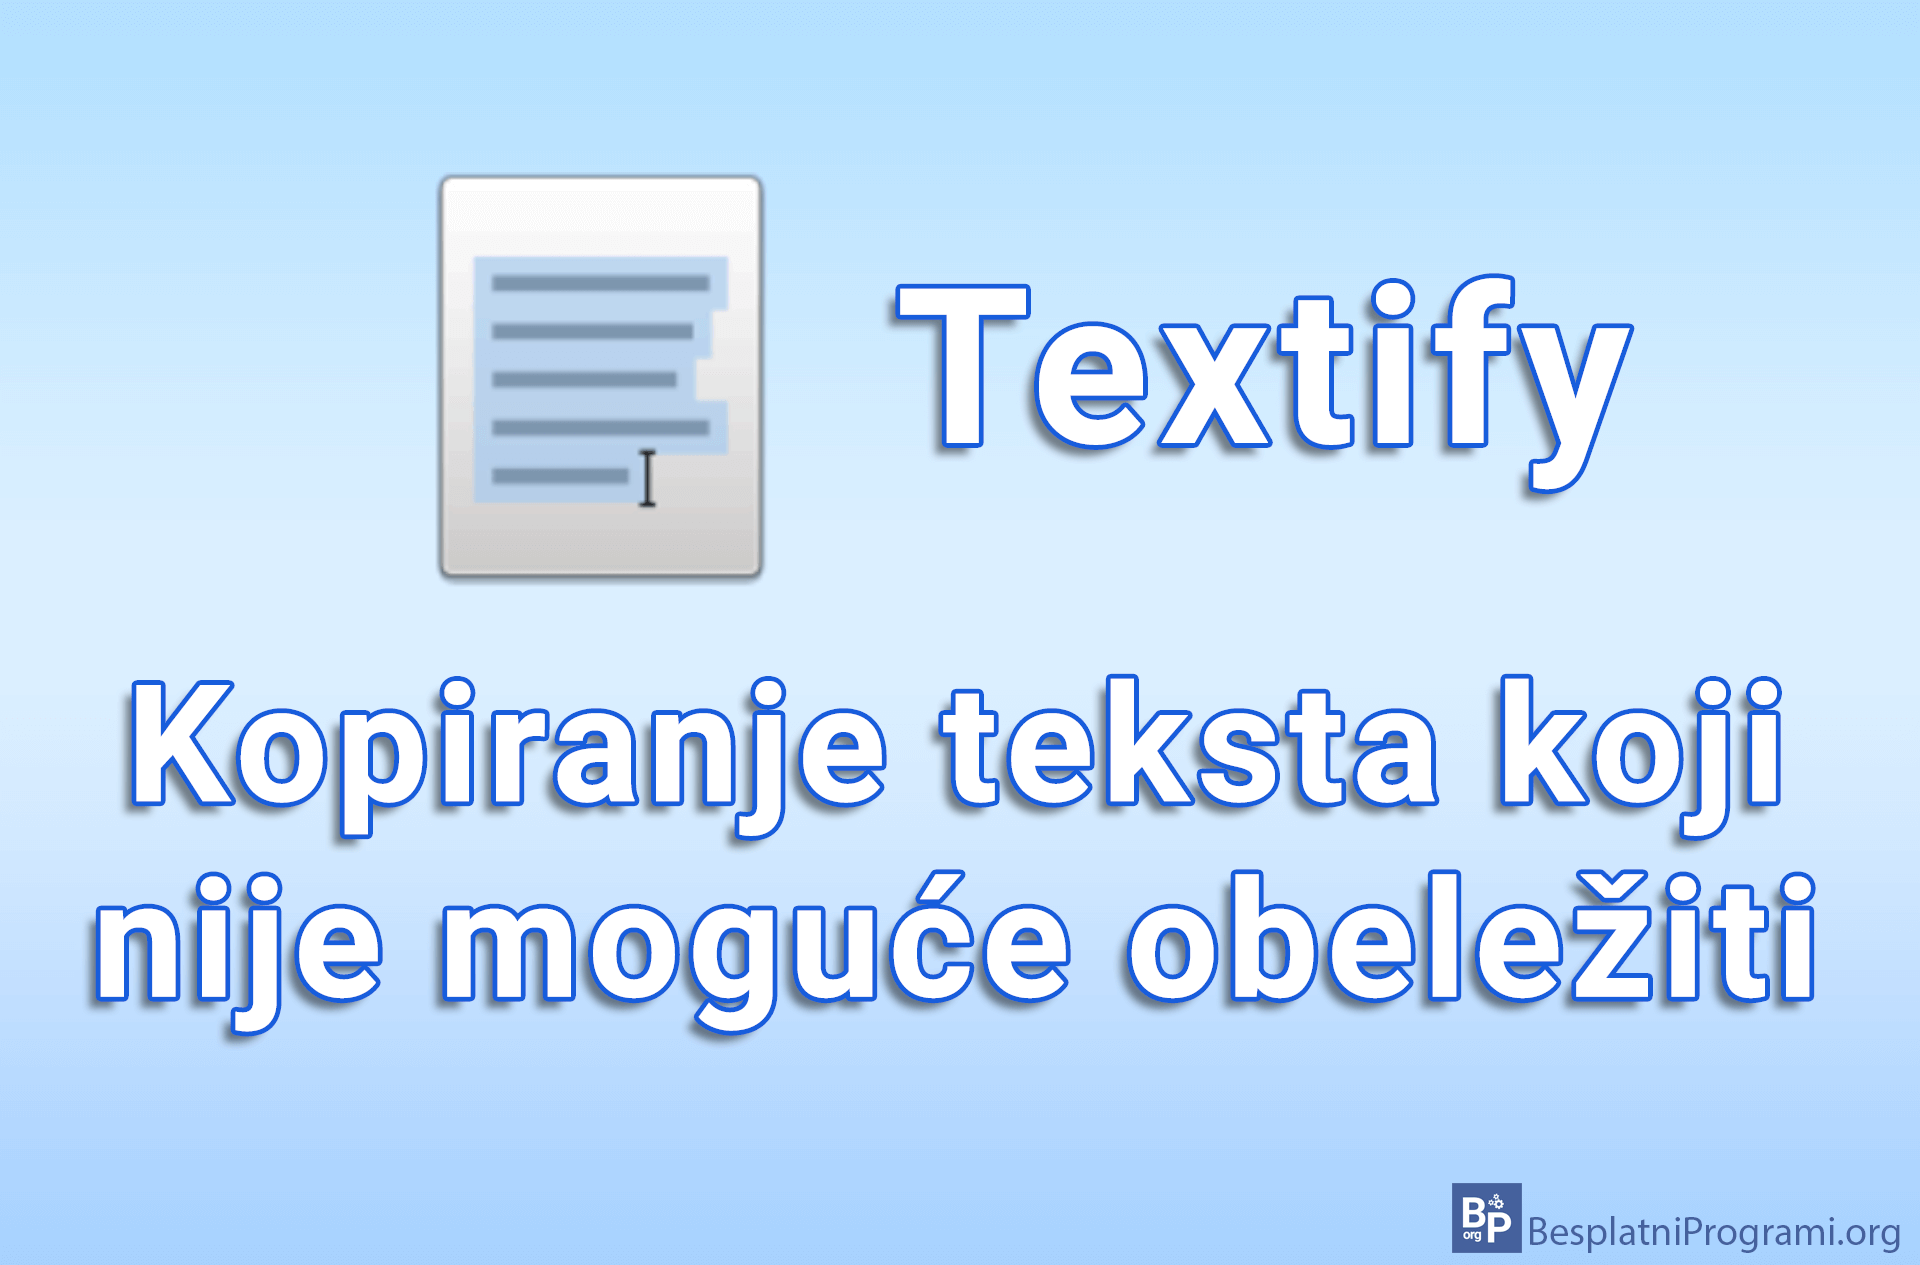 Textify – kopiranje teksta koji nije moguće obeležiti